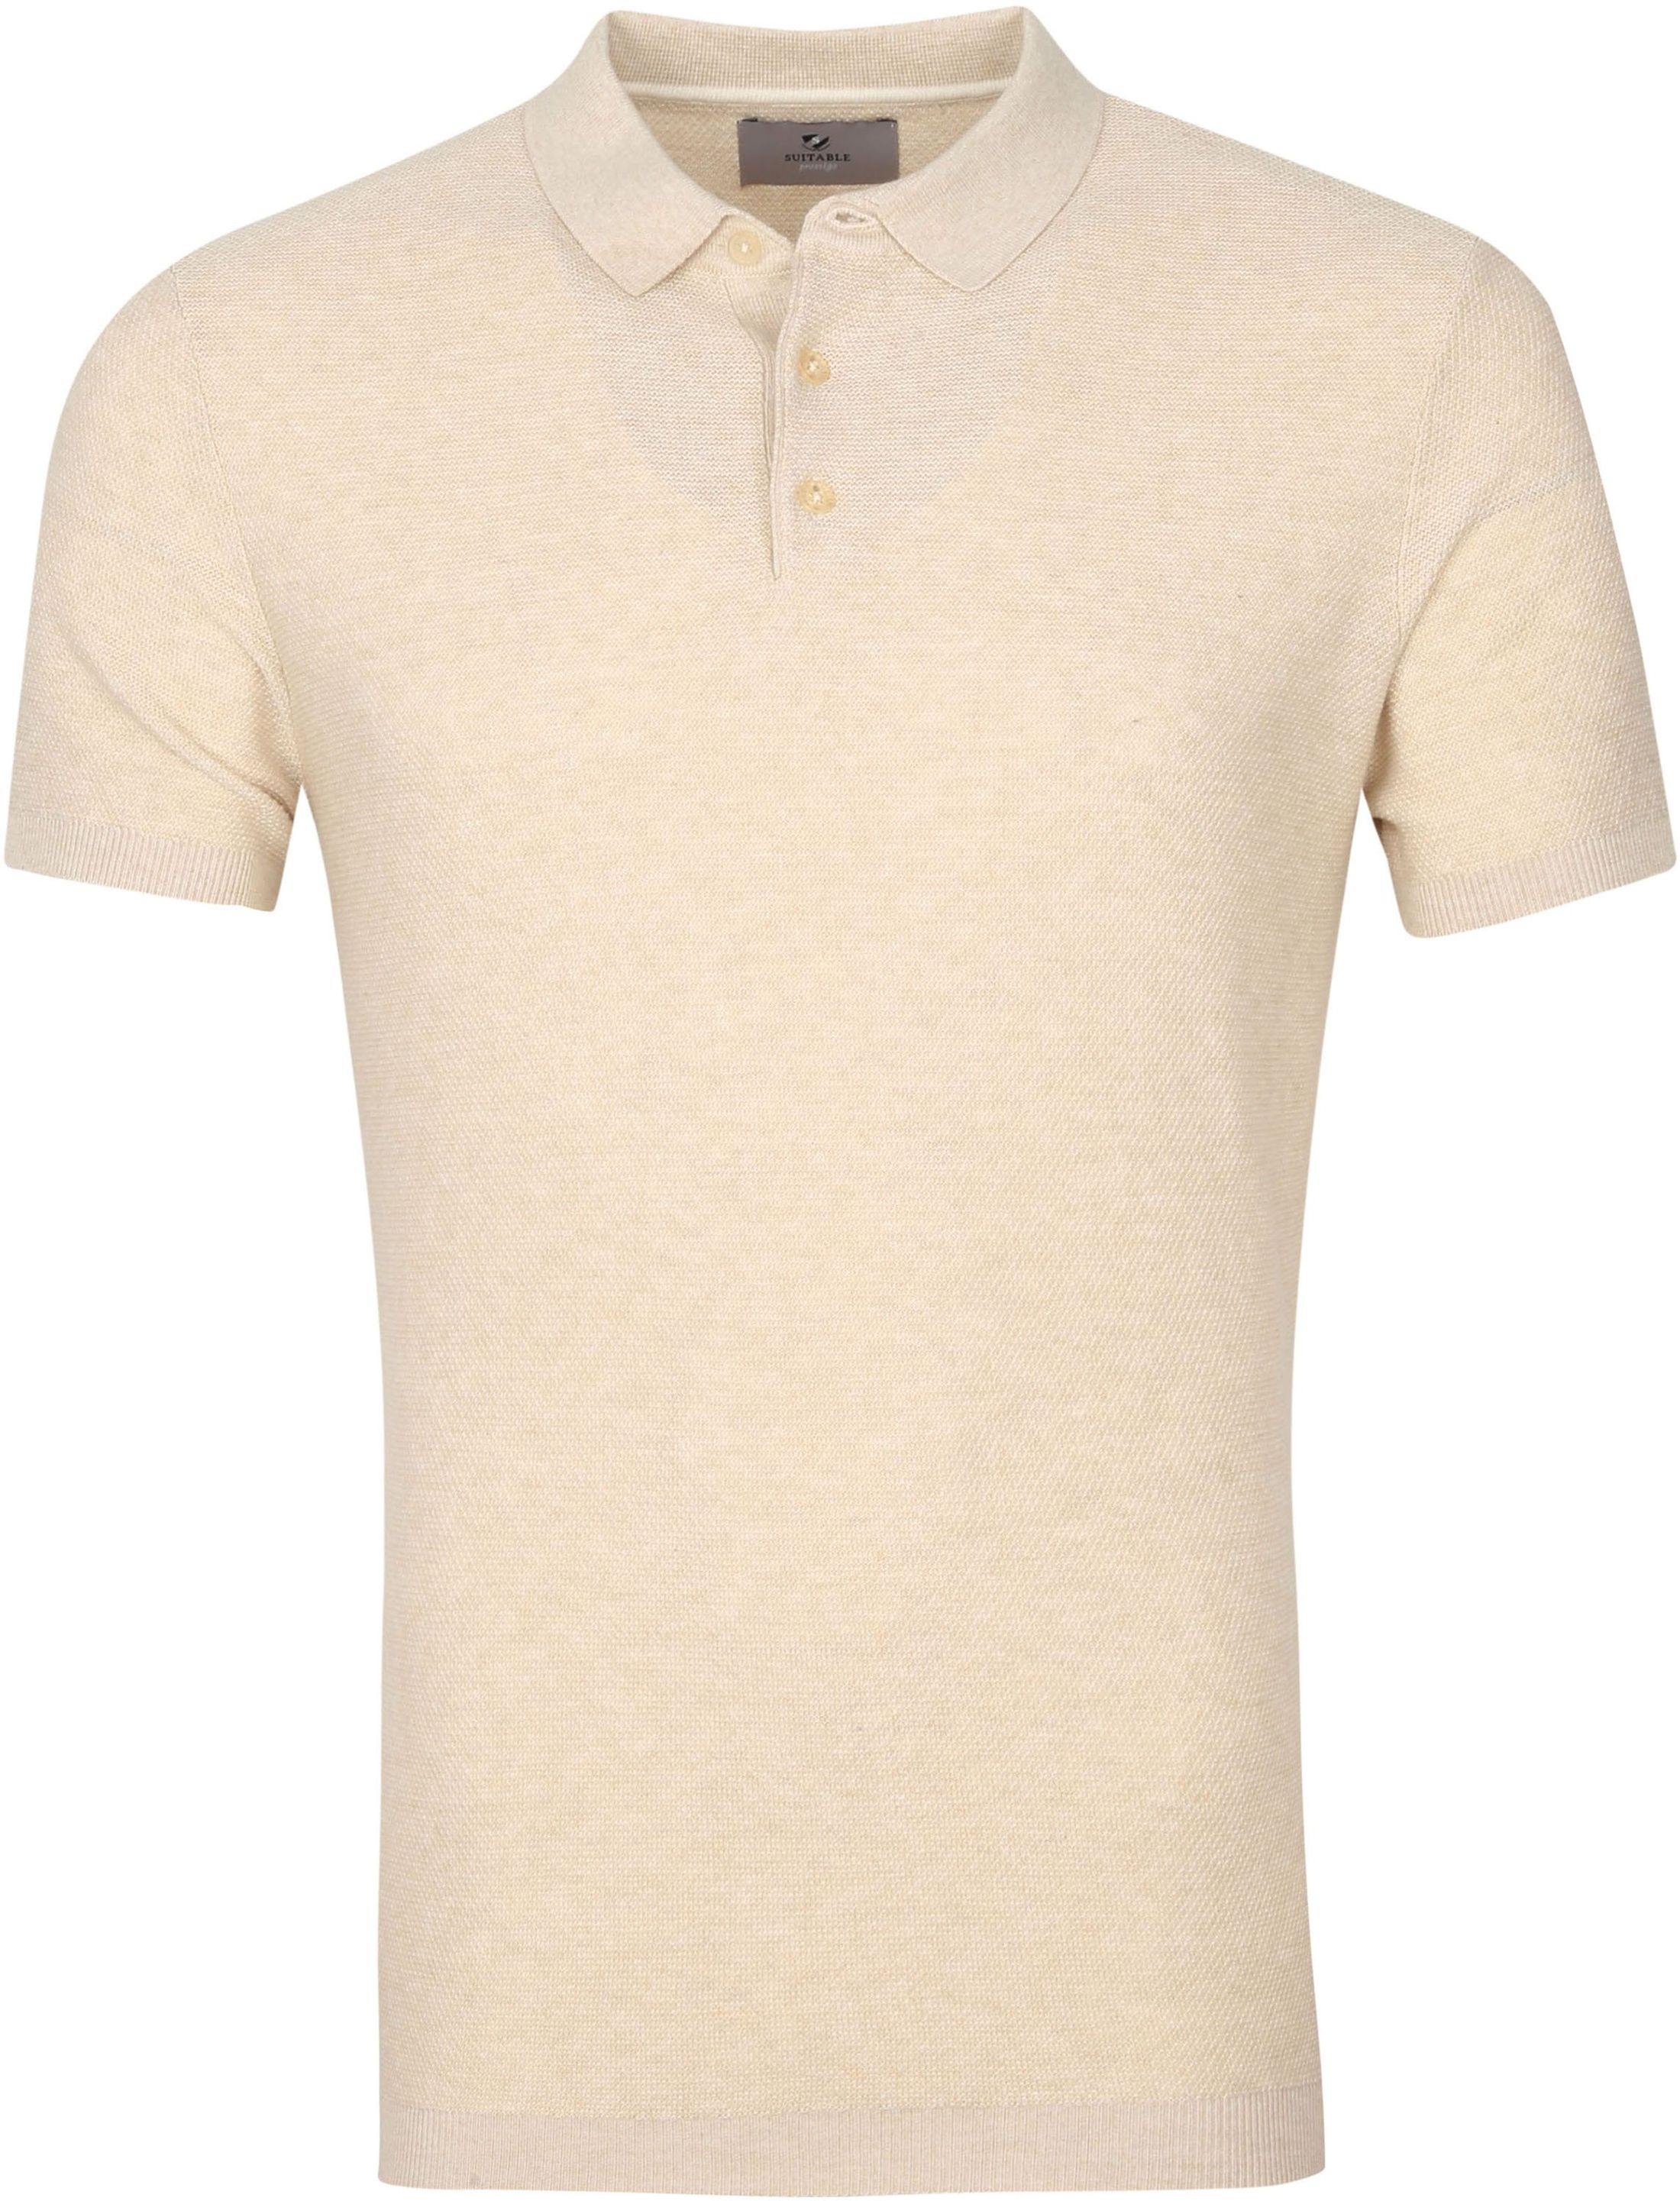 Suitable Prestige Jerry Polo Shirt Beige size XL